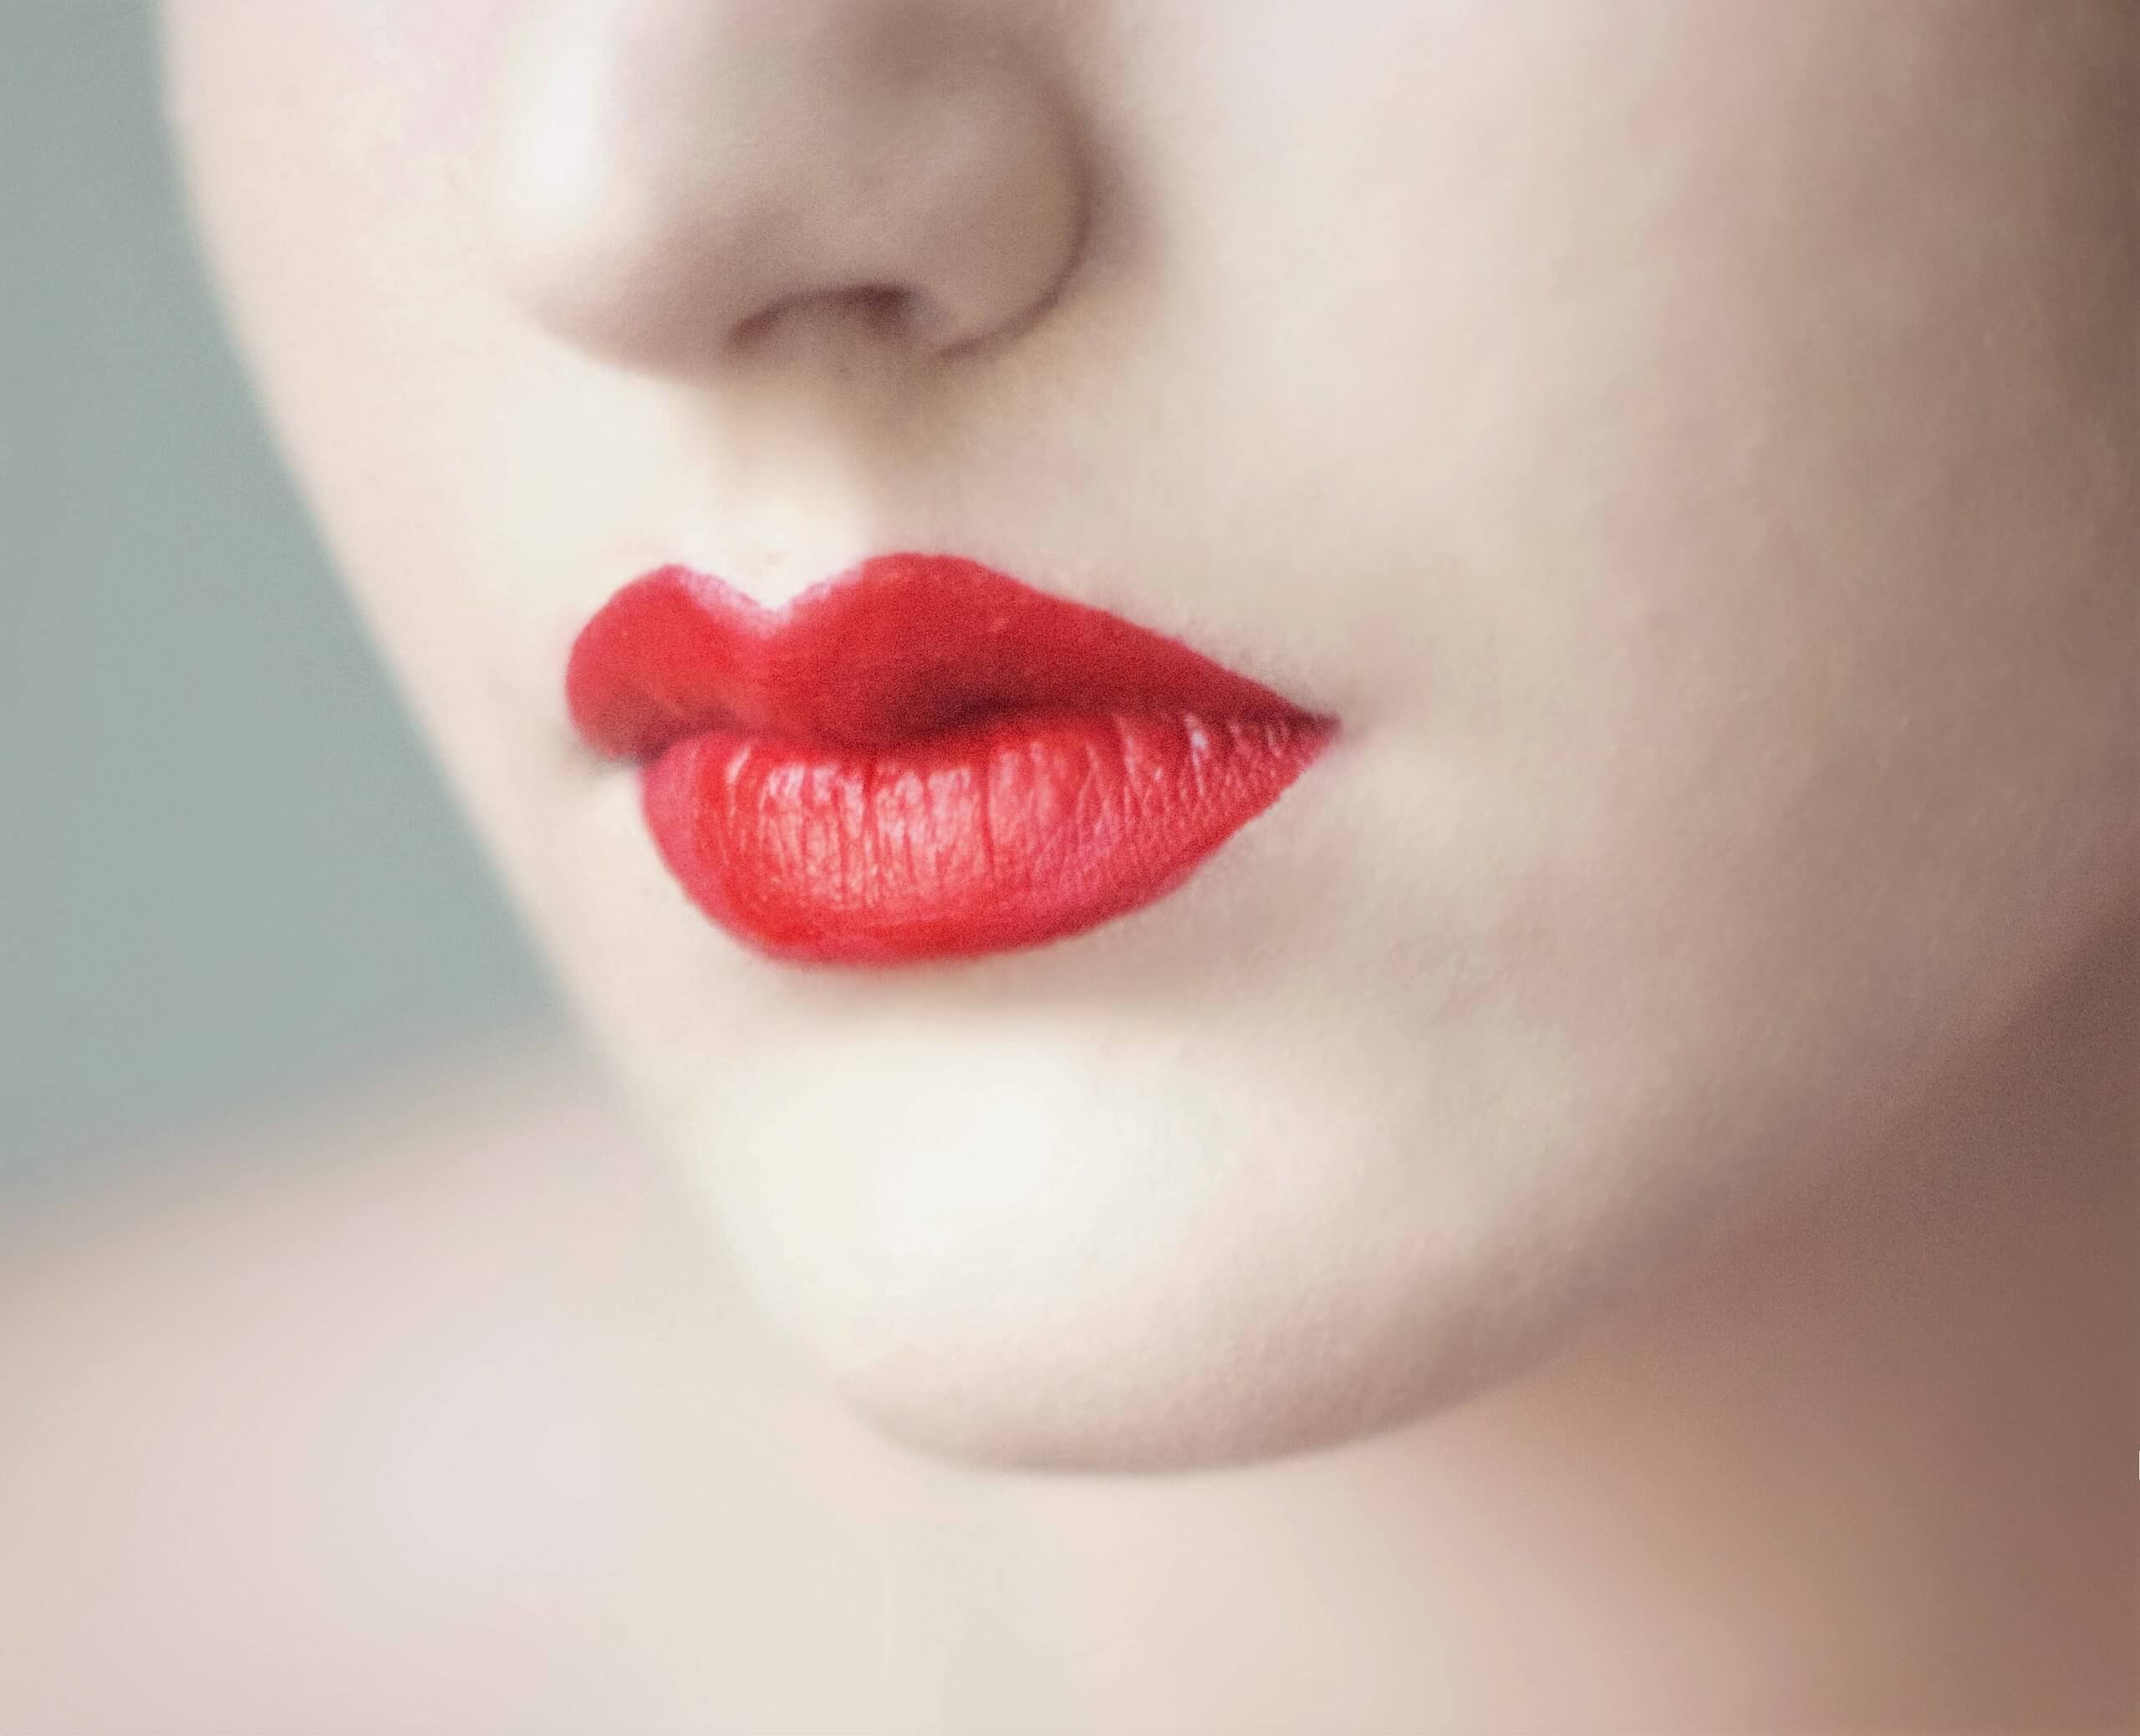 Tuto Make-up: Comment mettre son rouge à lèvres?